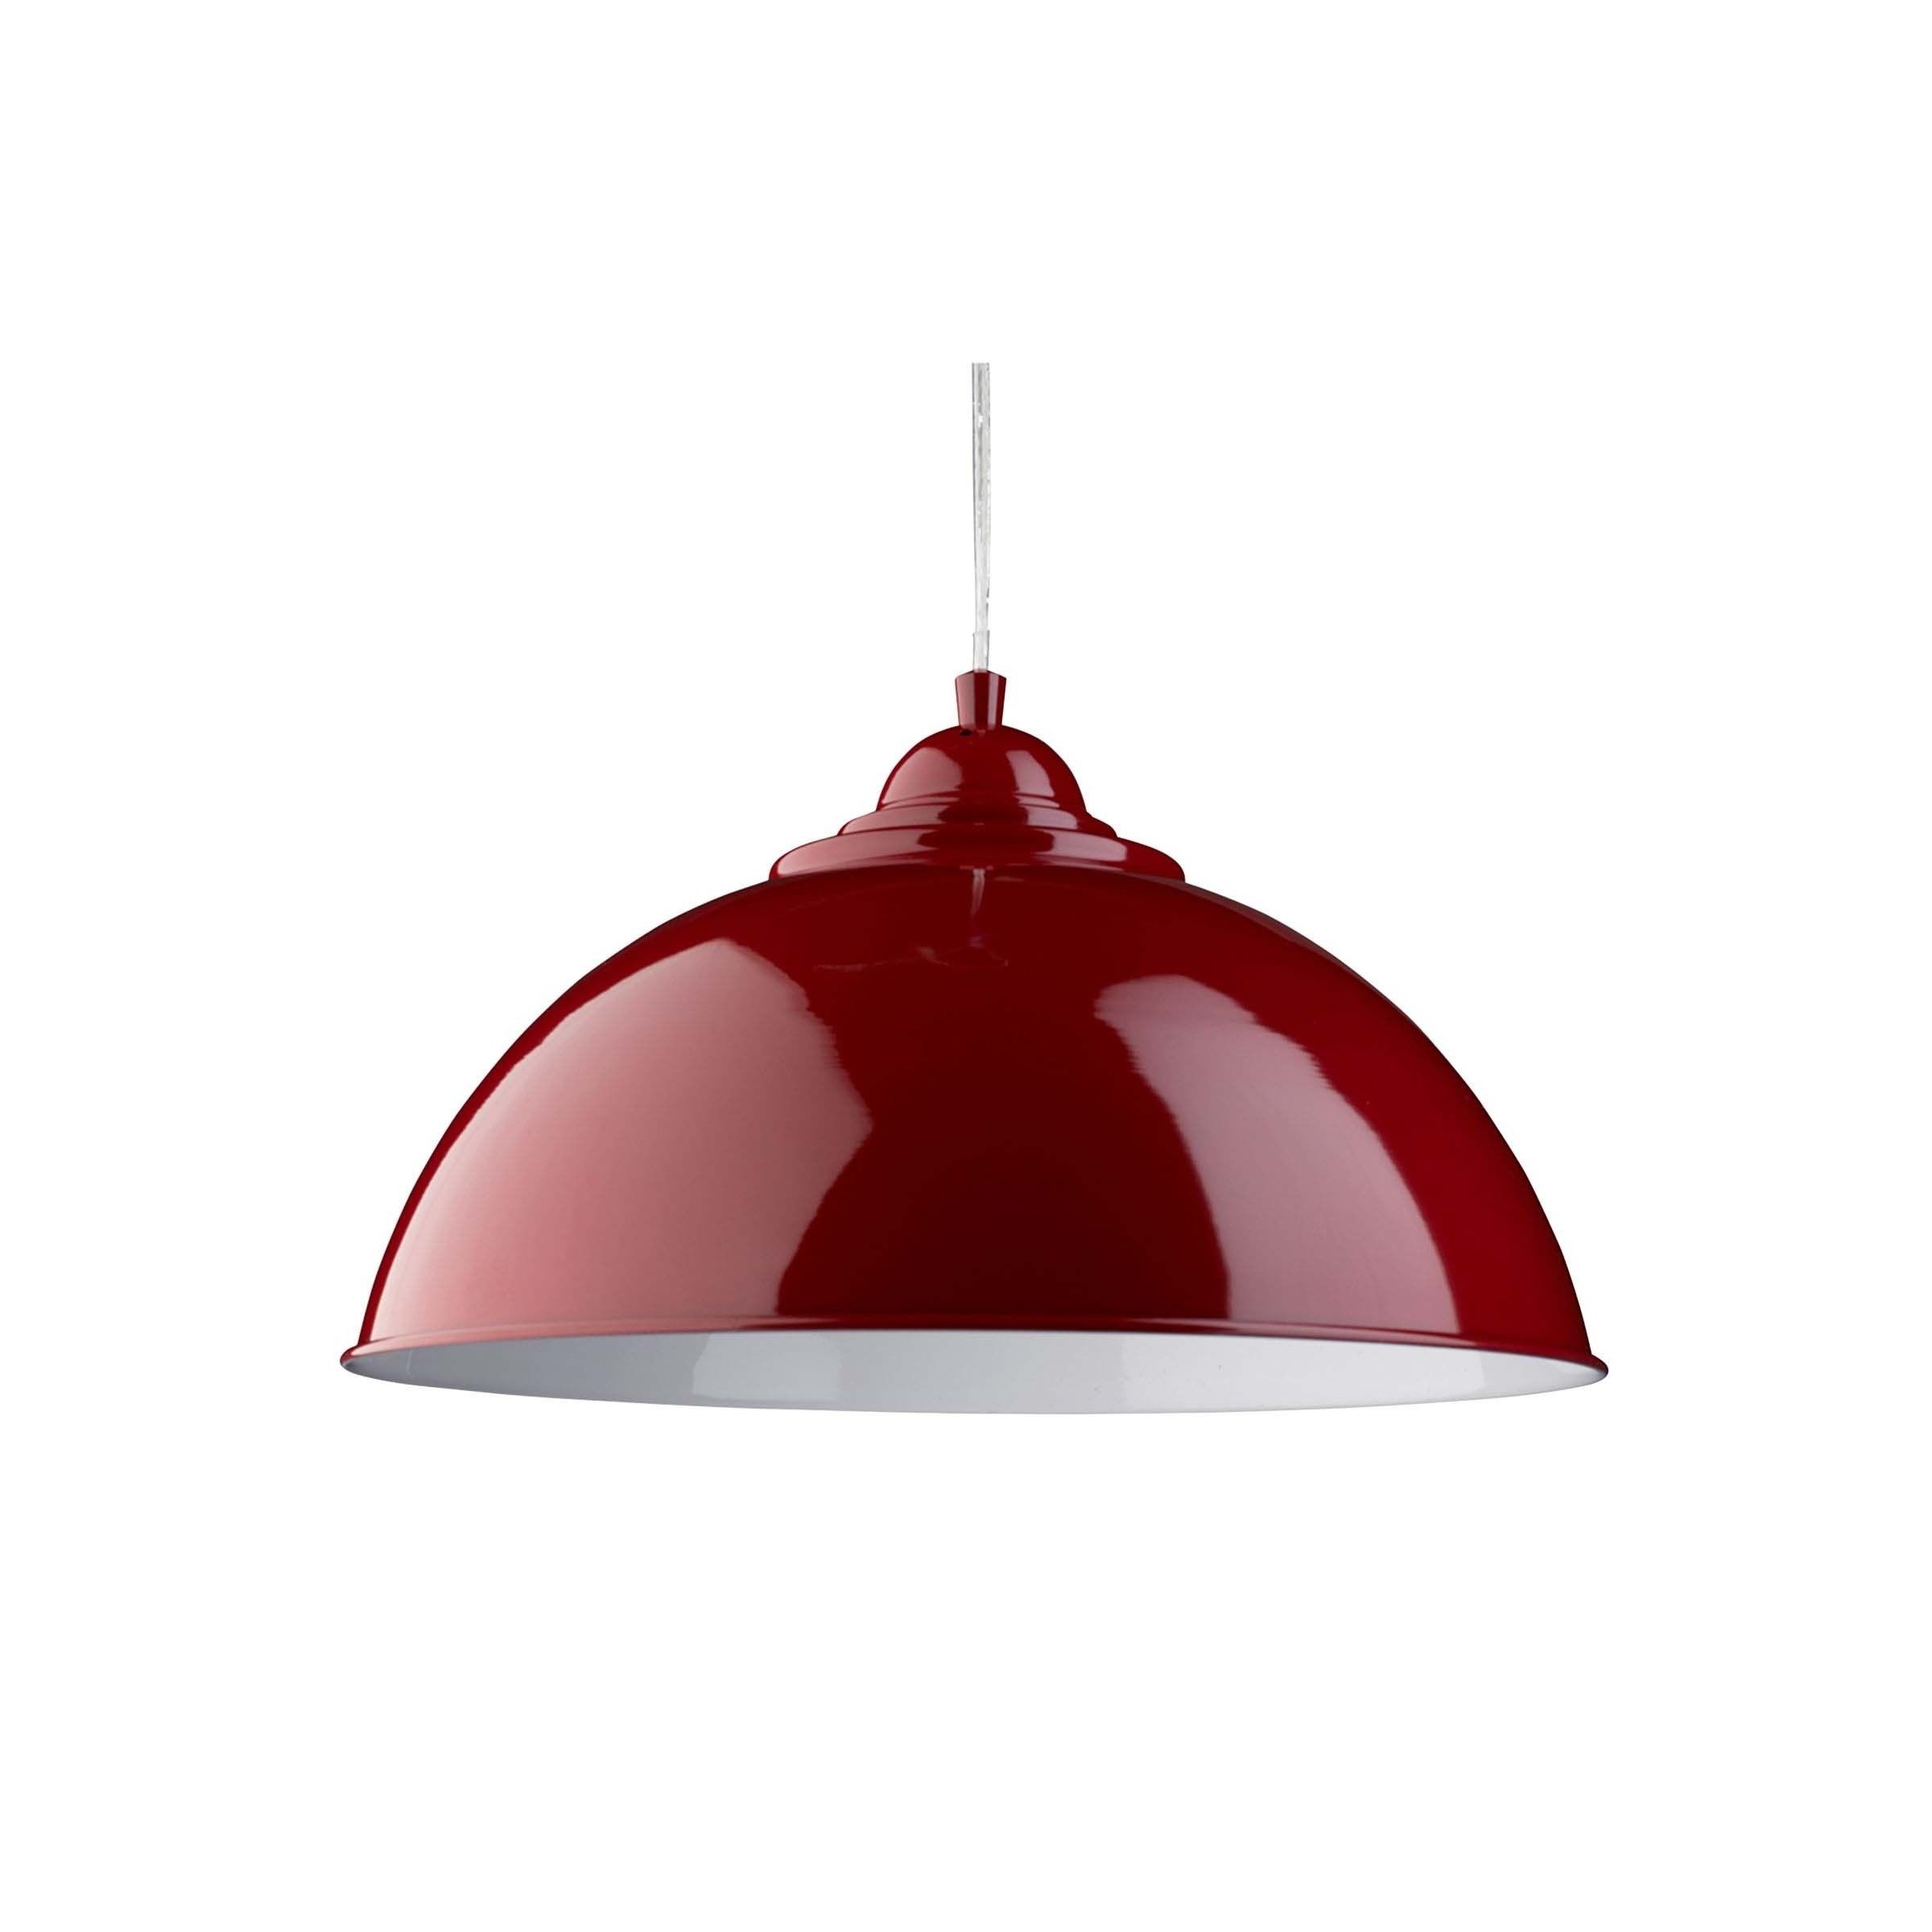 Voordracht Dankbaar terugvallen Searchlight Fusion - hanglamp - Ø 34 x 130 cm - glanzend rood | Lichtkoning